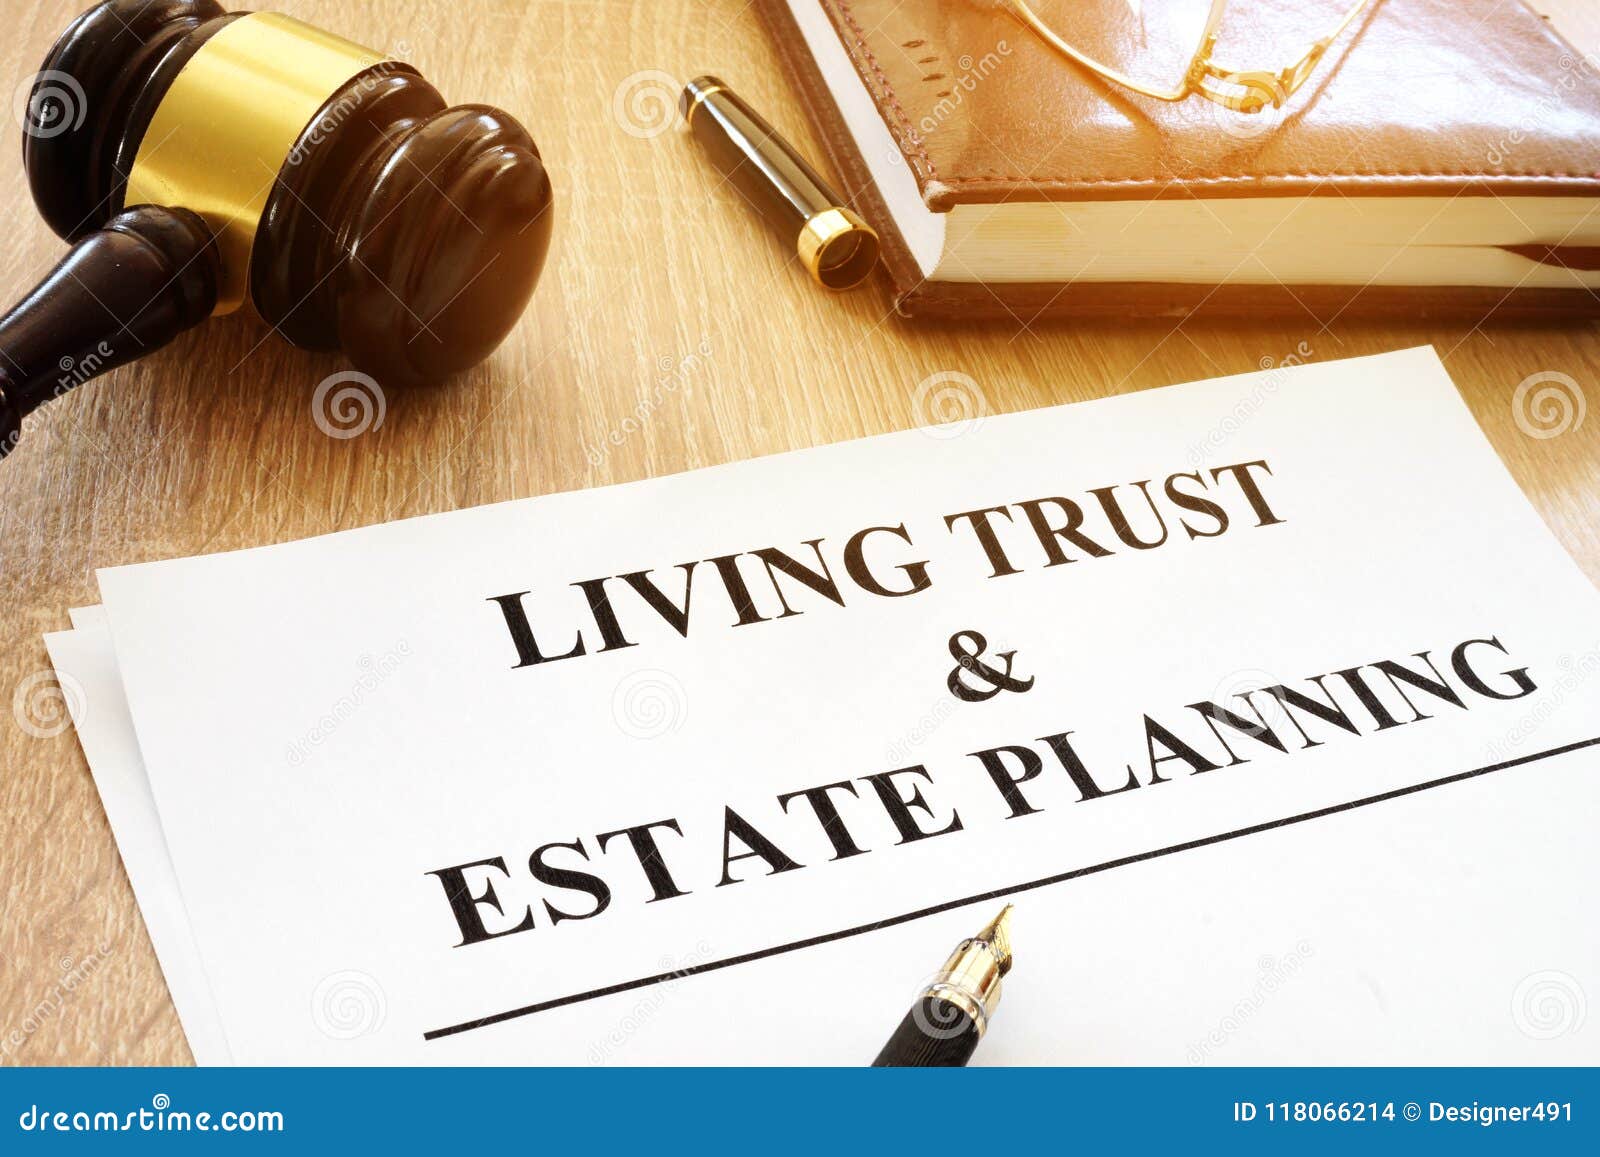 living trust and estate planning form on desk.